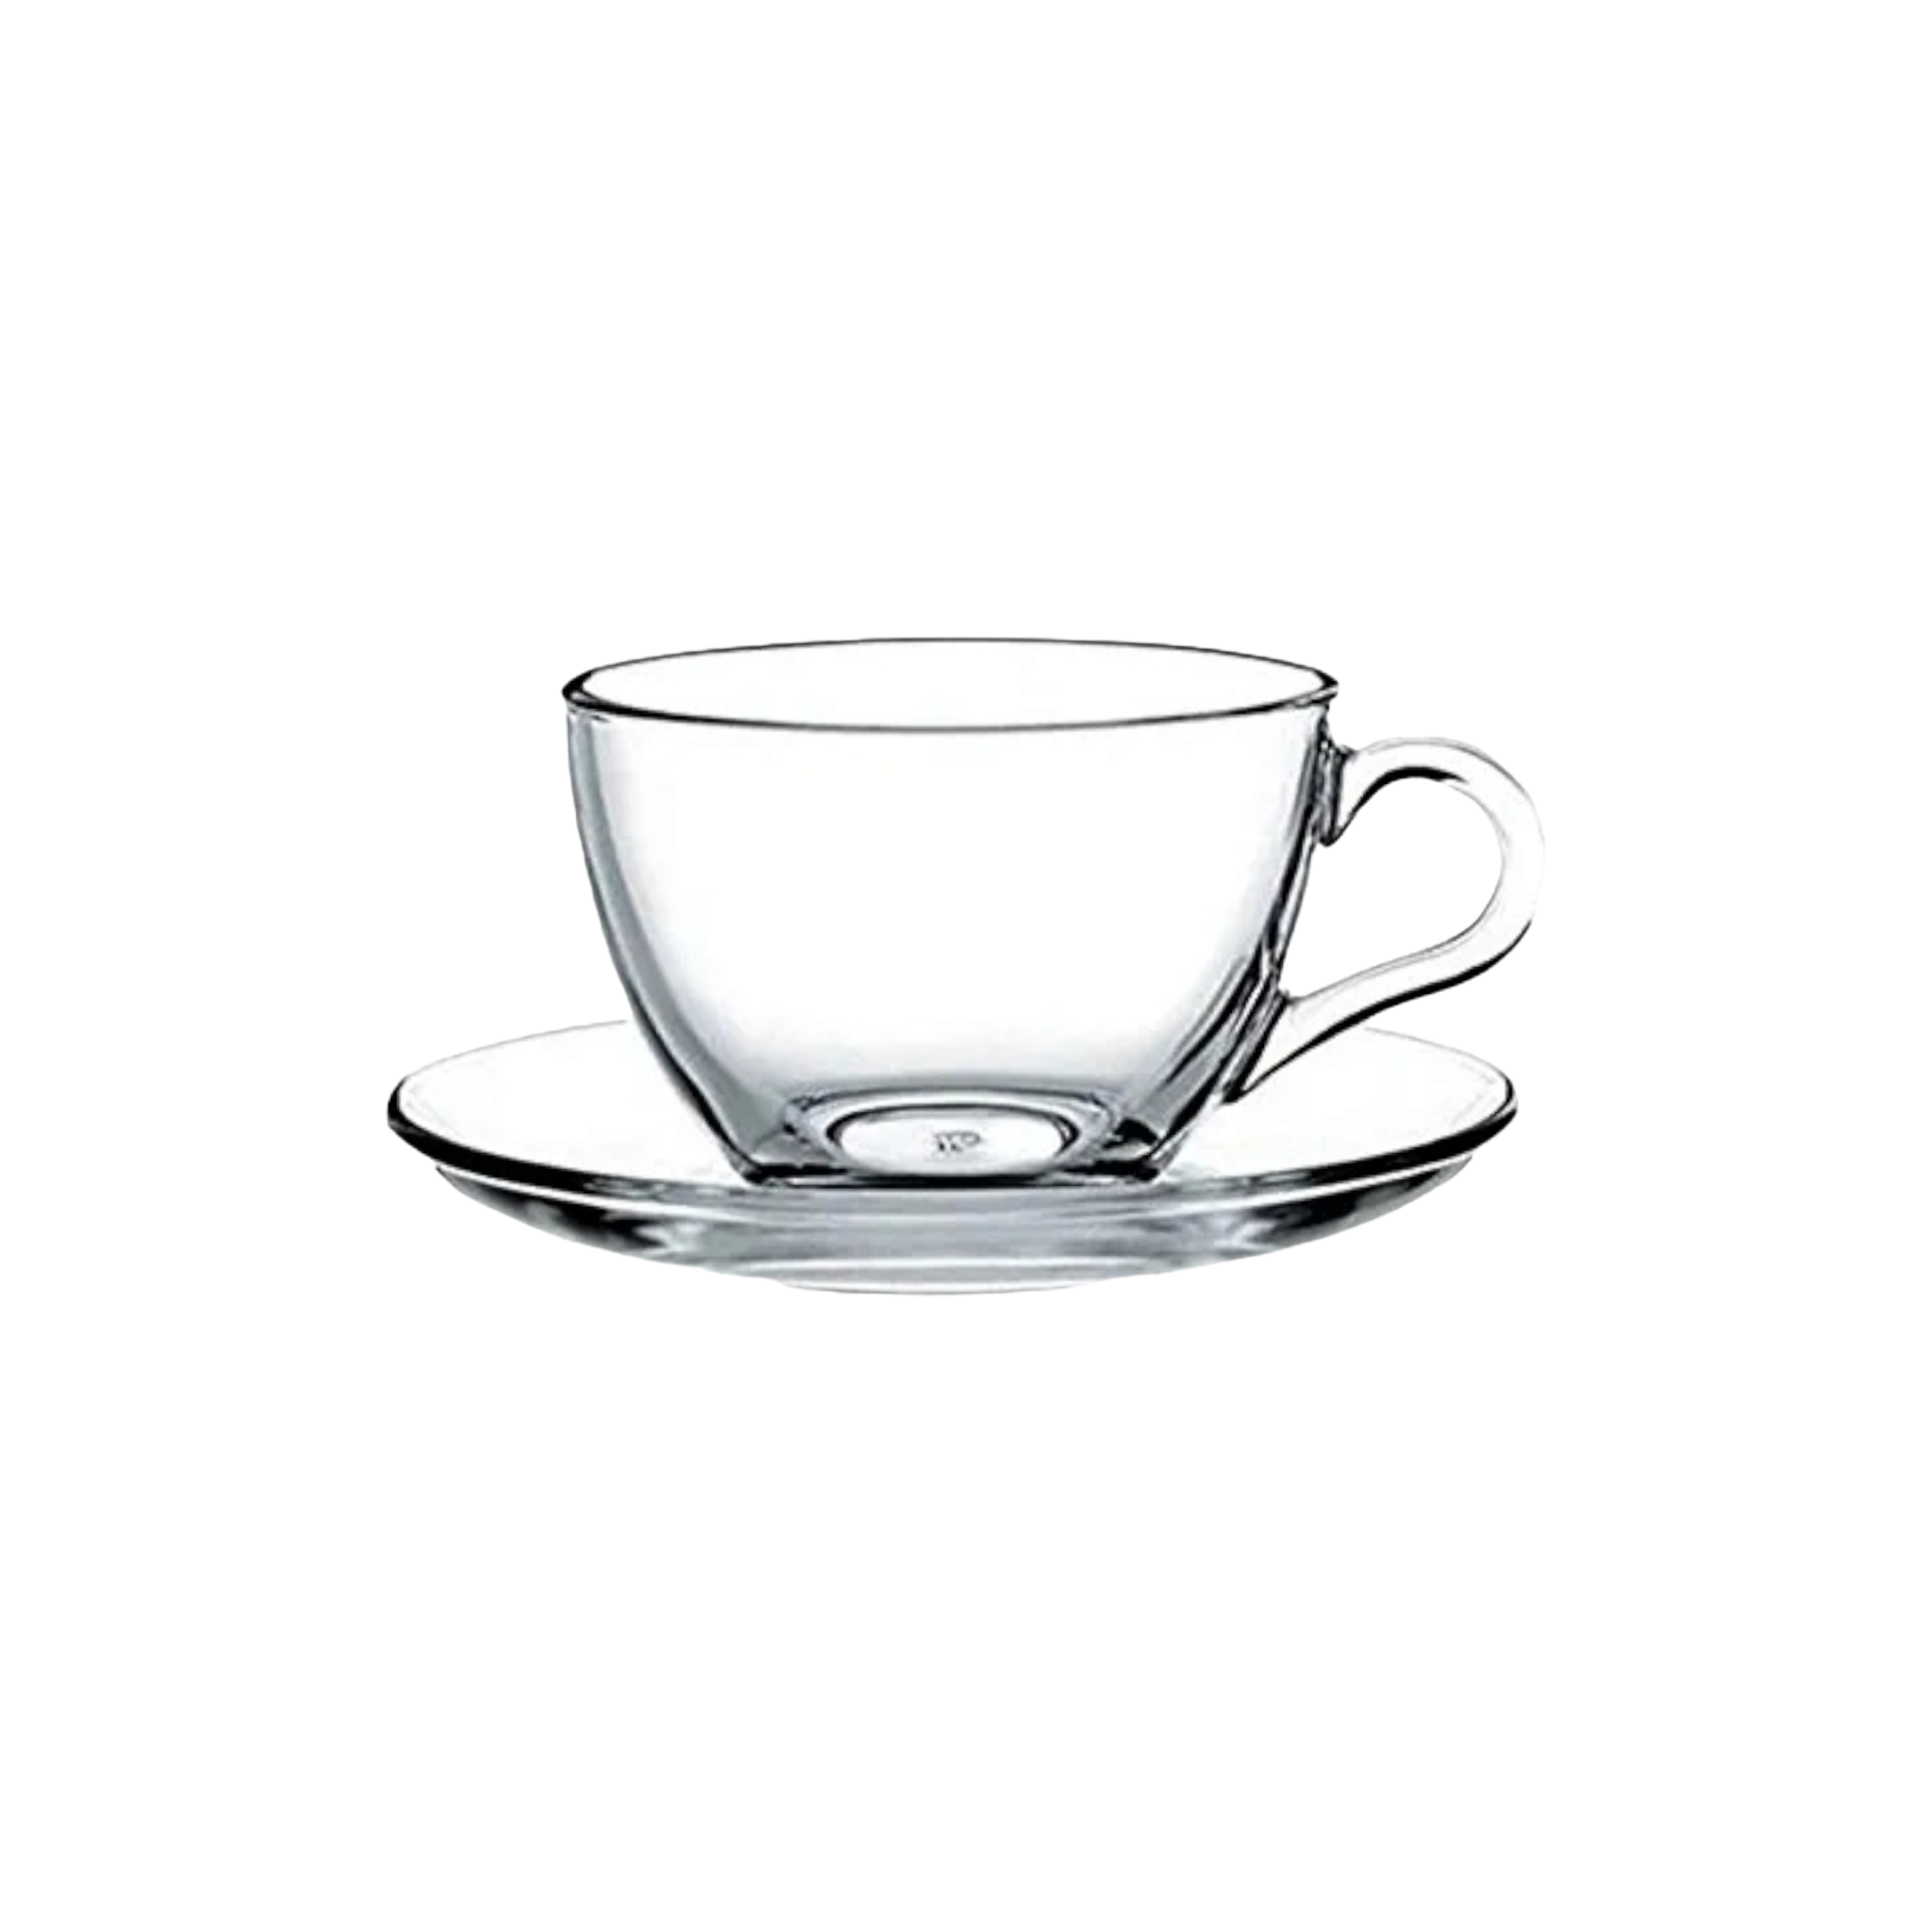 Pasabahce Glass Tea Cup and Saucer 238ml 6Pcs 24027